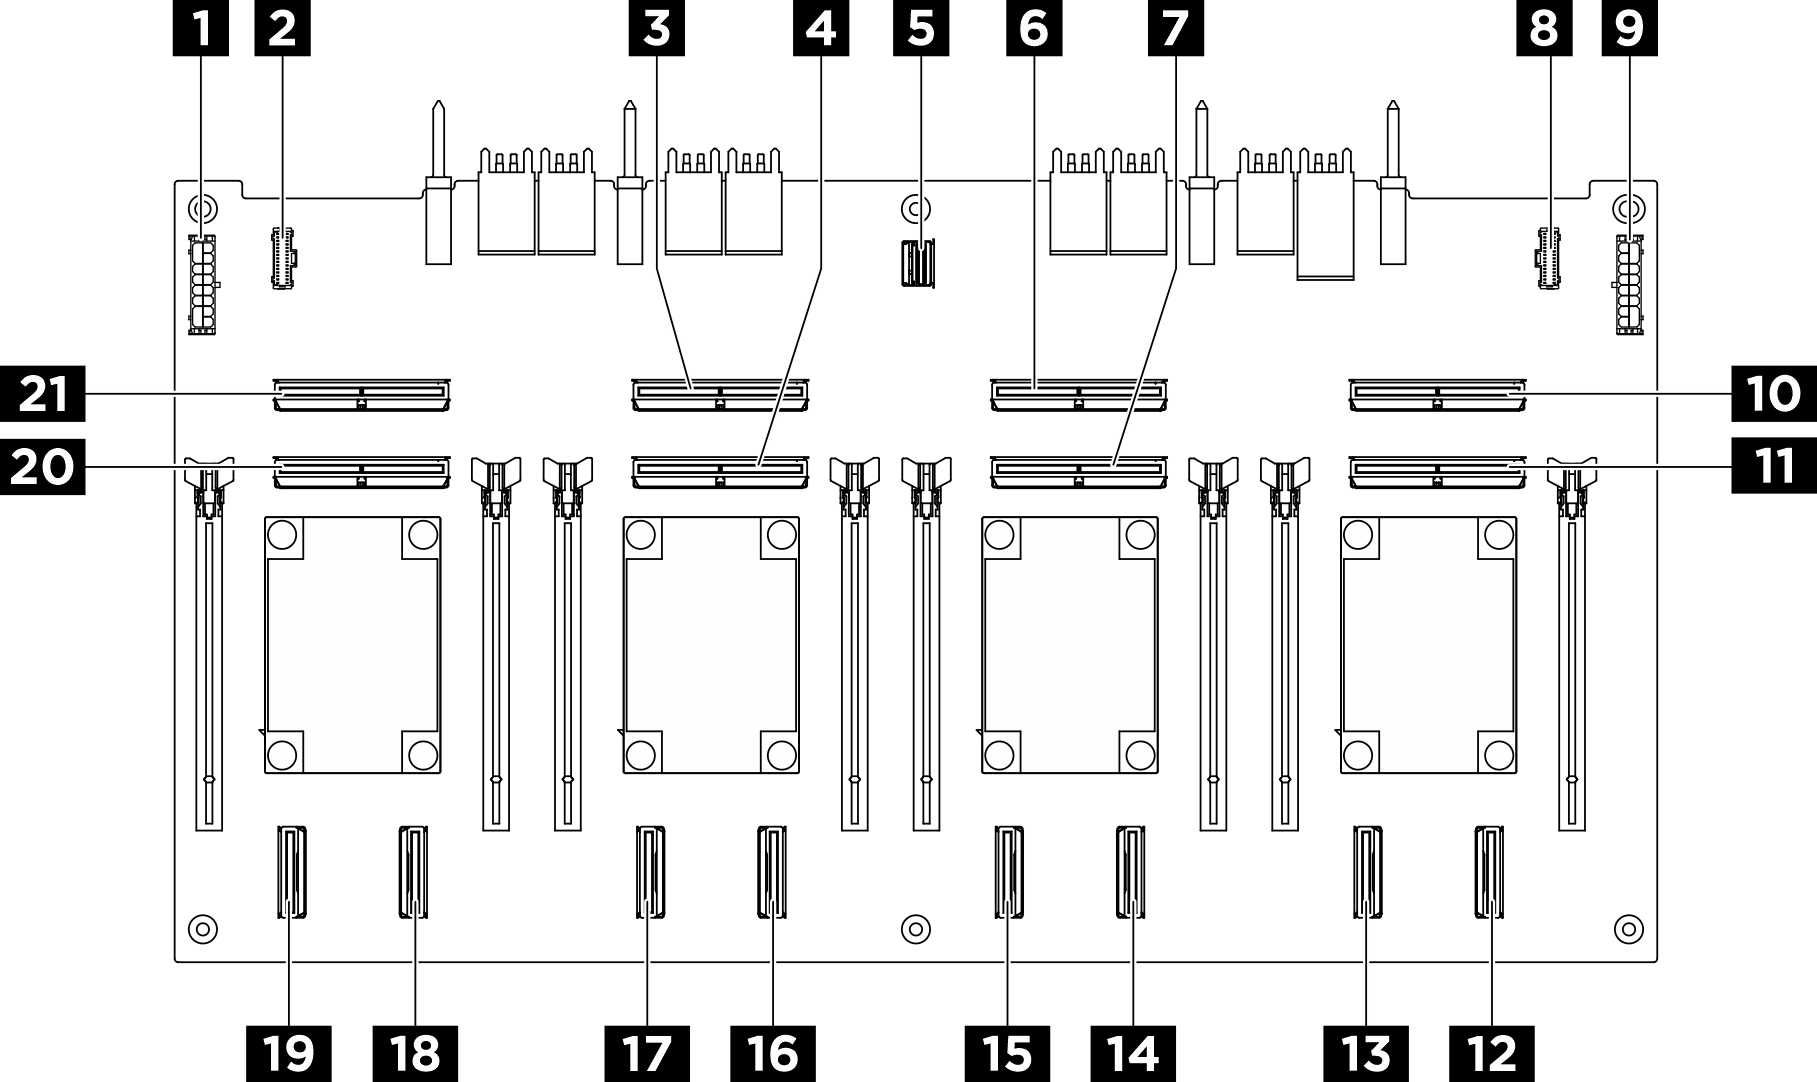 Tableau de commutation PCIe connectors